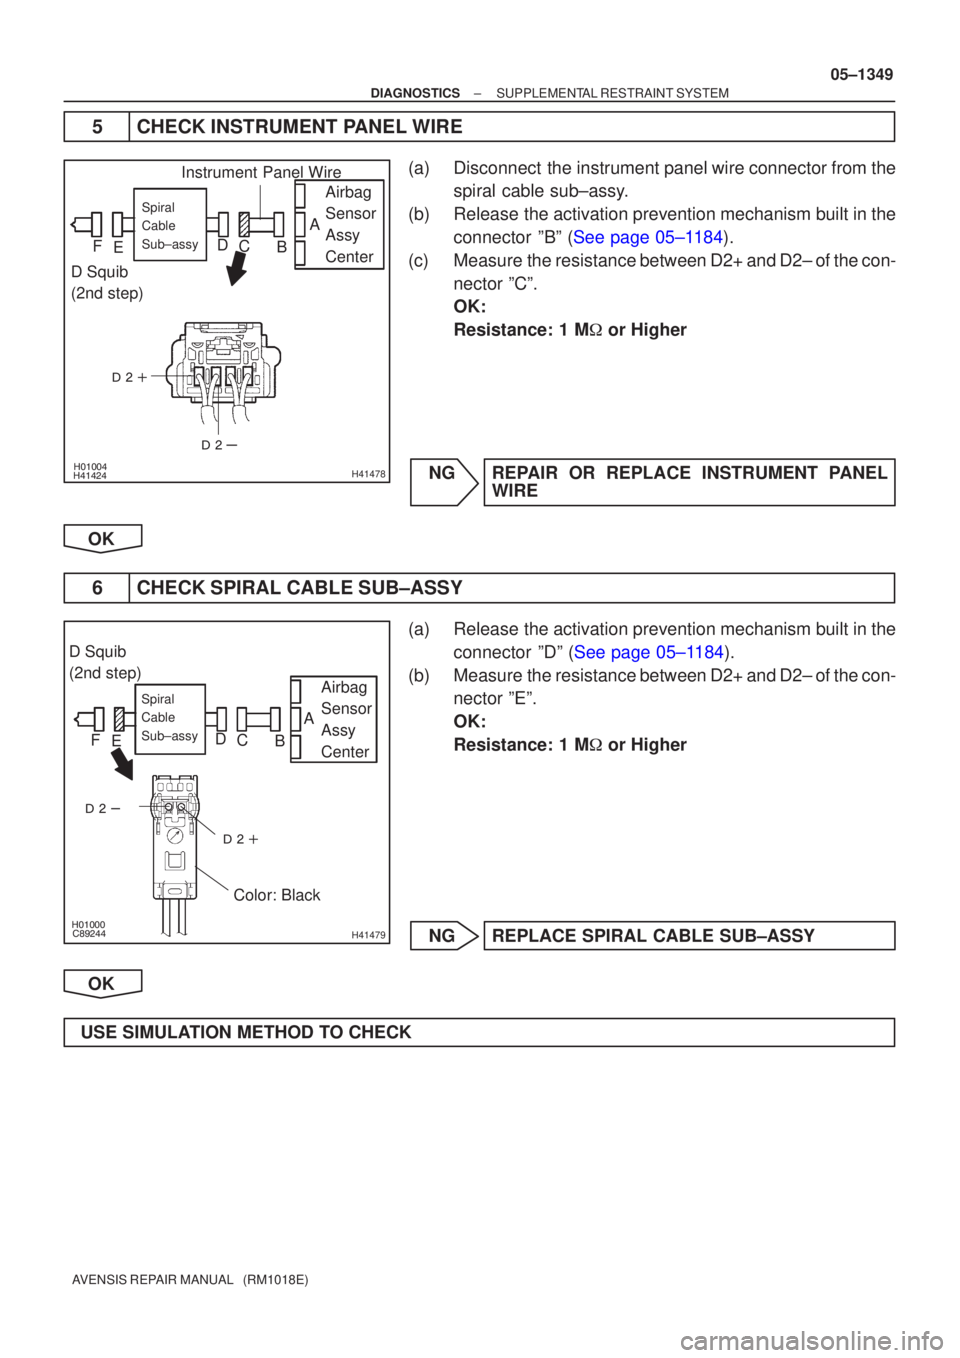 TOYOTA AVENSIS 2005  Service Repair Manual 

\b
\bH41478
Airbag
Sensor
Assy
CenterSpiral
Cable
Sub±assy
Instrument Panel Wire
D Squib
(2nd step) A
B
C
D
E
F
\b



H41479
Airbag
Sensor
Assy
CenterSpiral
Cable
S